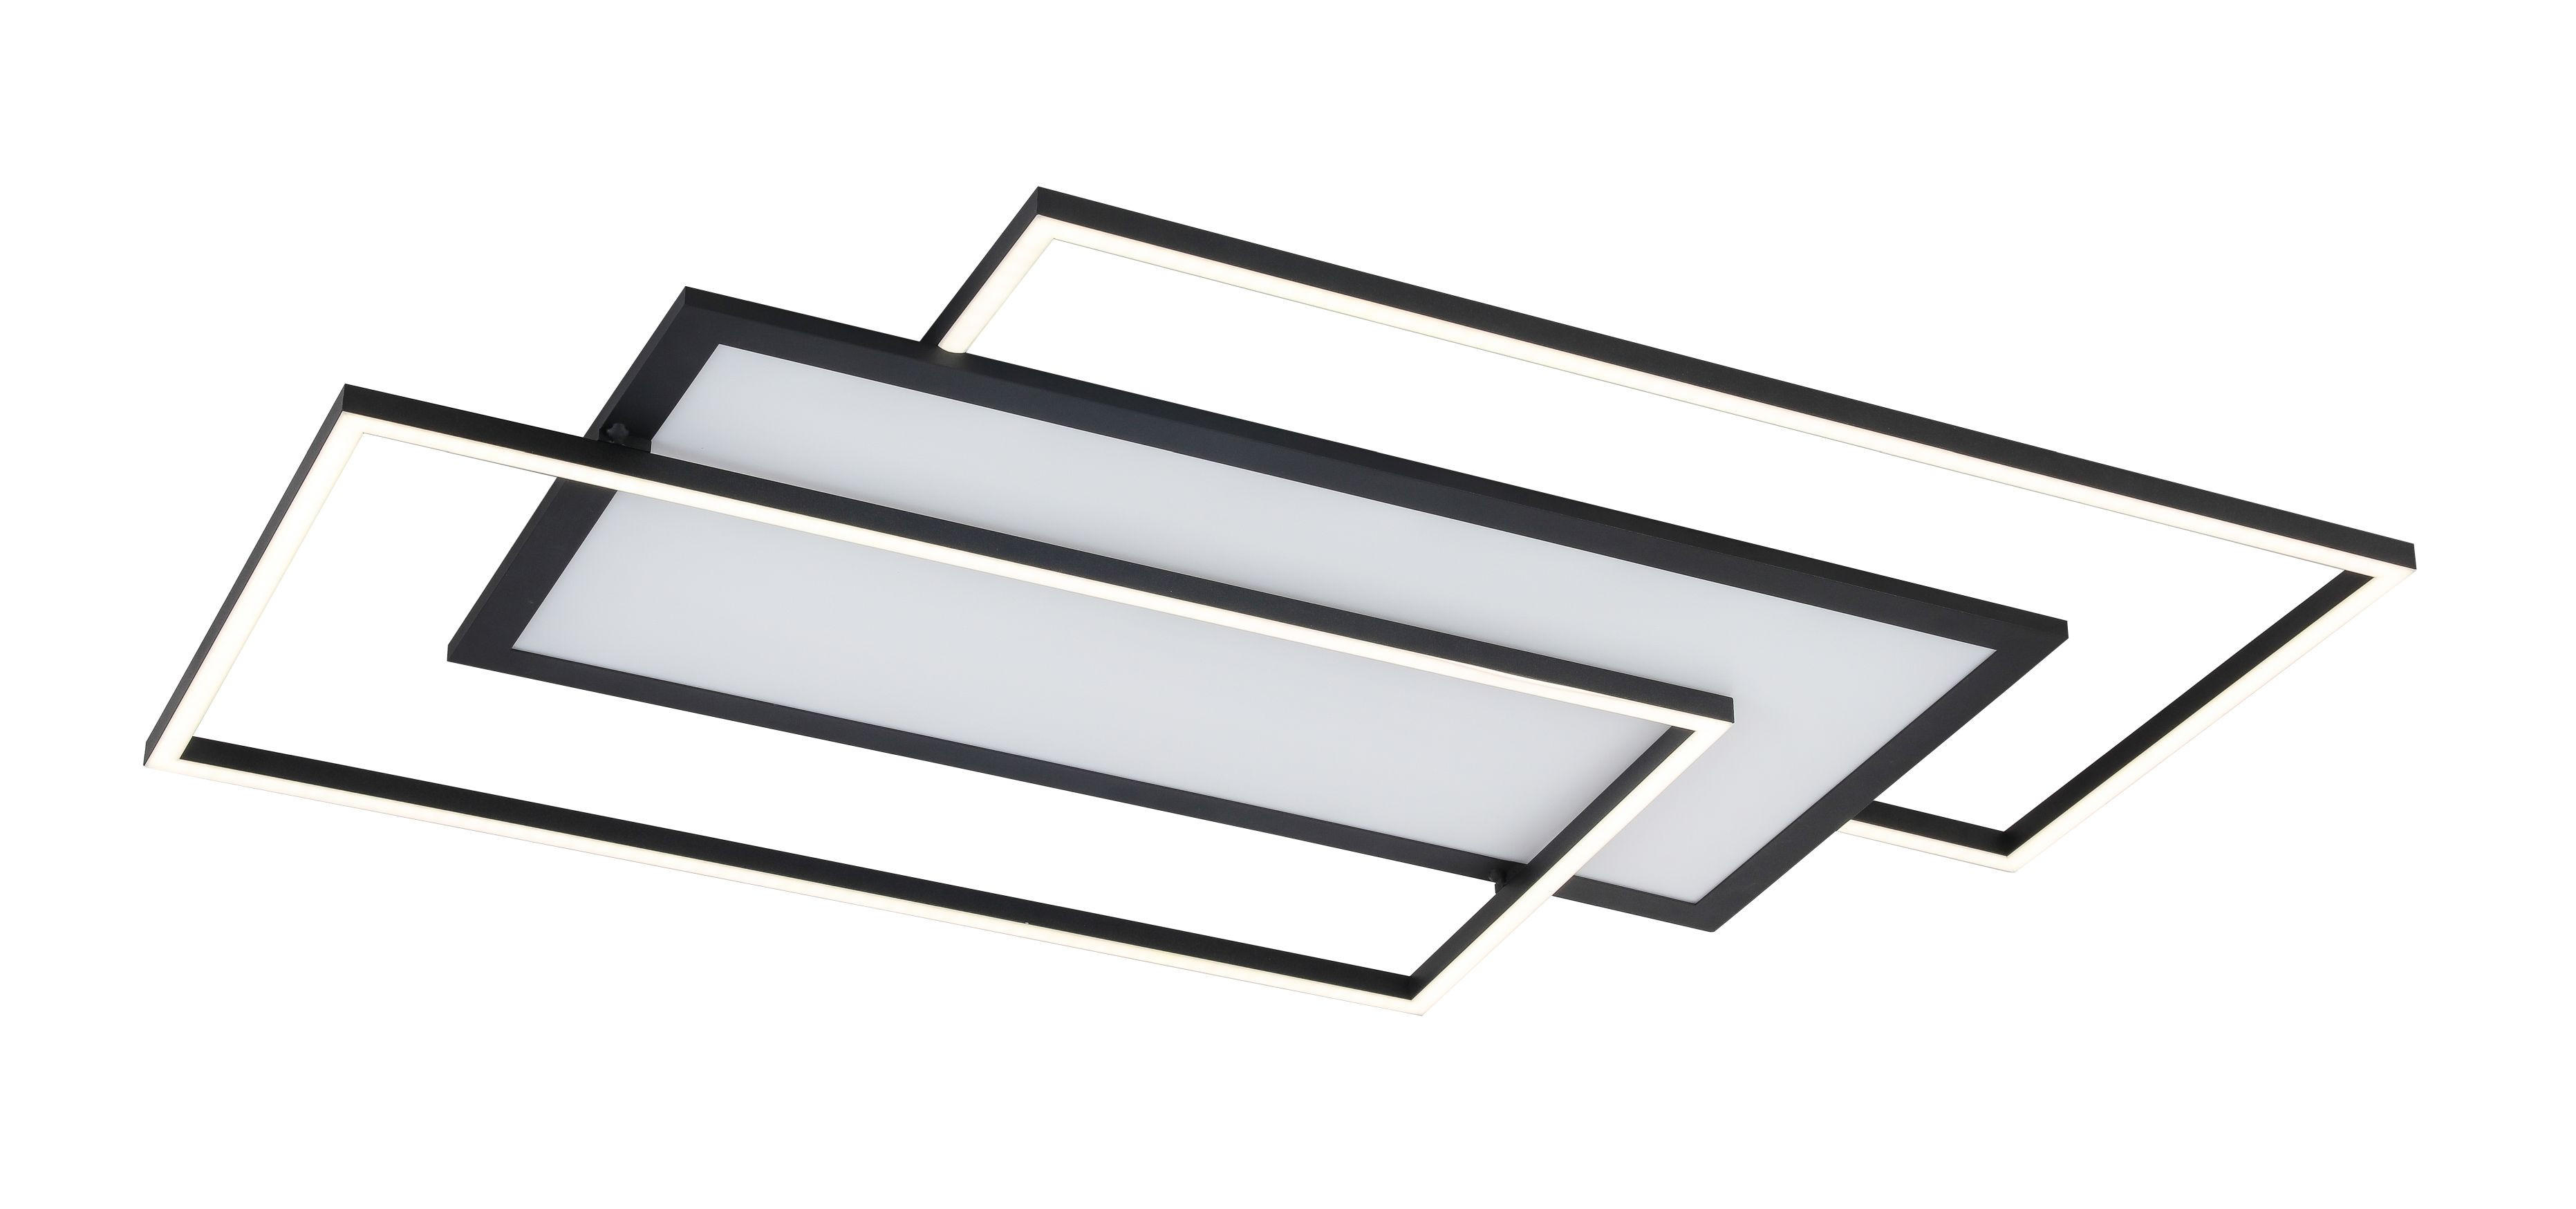 STROPNA LED-SVETILKA - črna, Design, kovina/umetna masa (80/50/6cm) - Novel